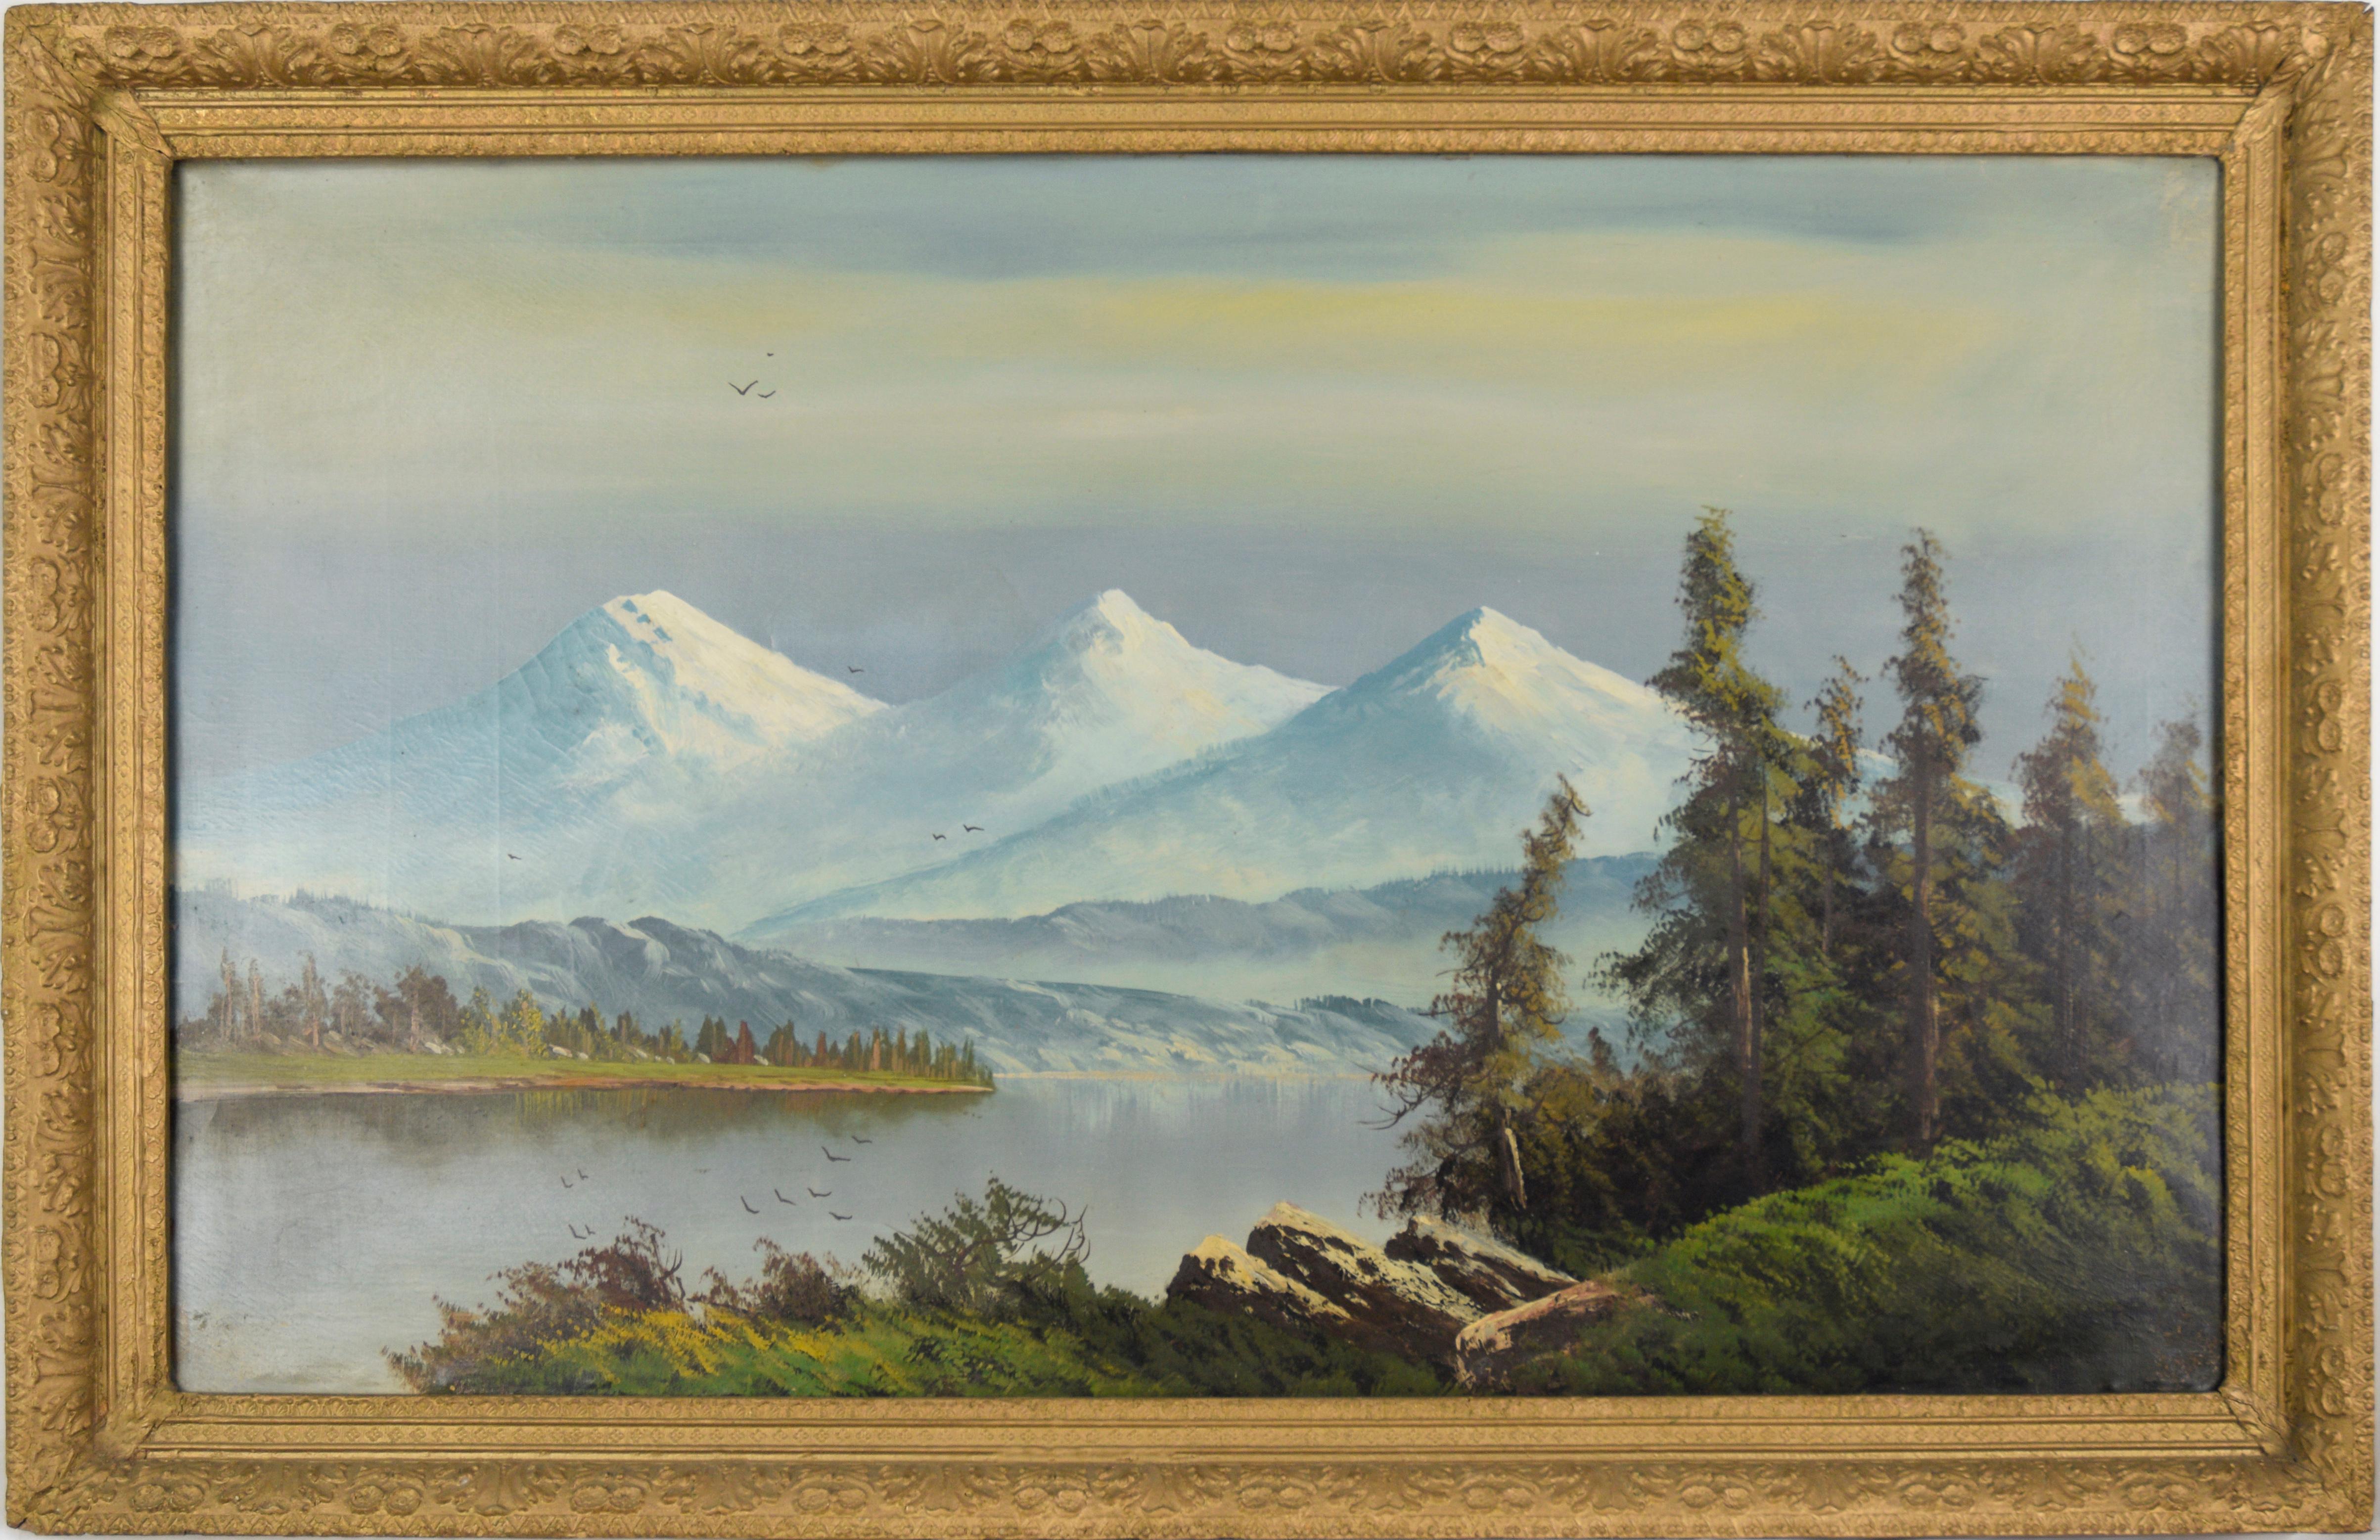 Landscape Painting John Englehart - Trois sœurs dans la chaîne Cascade, lac de l'Oregon avec oiseaux migrant